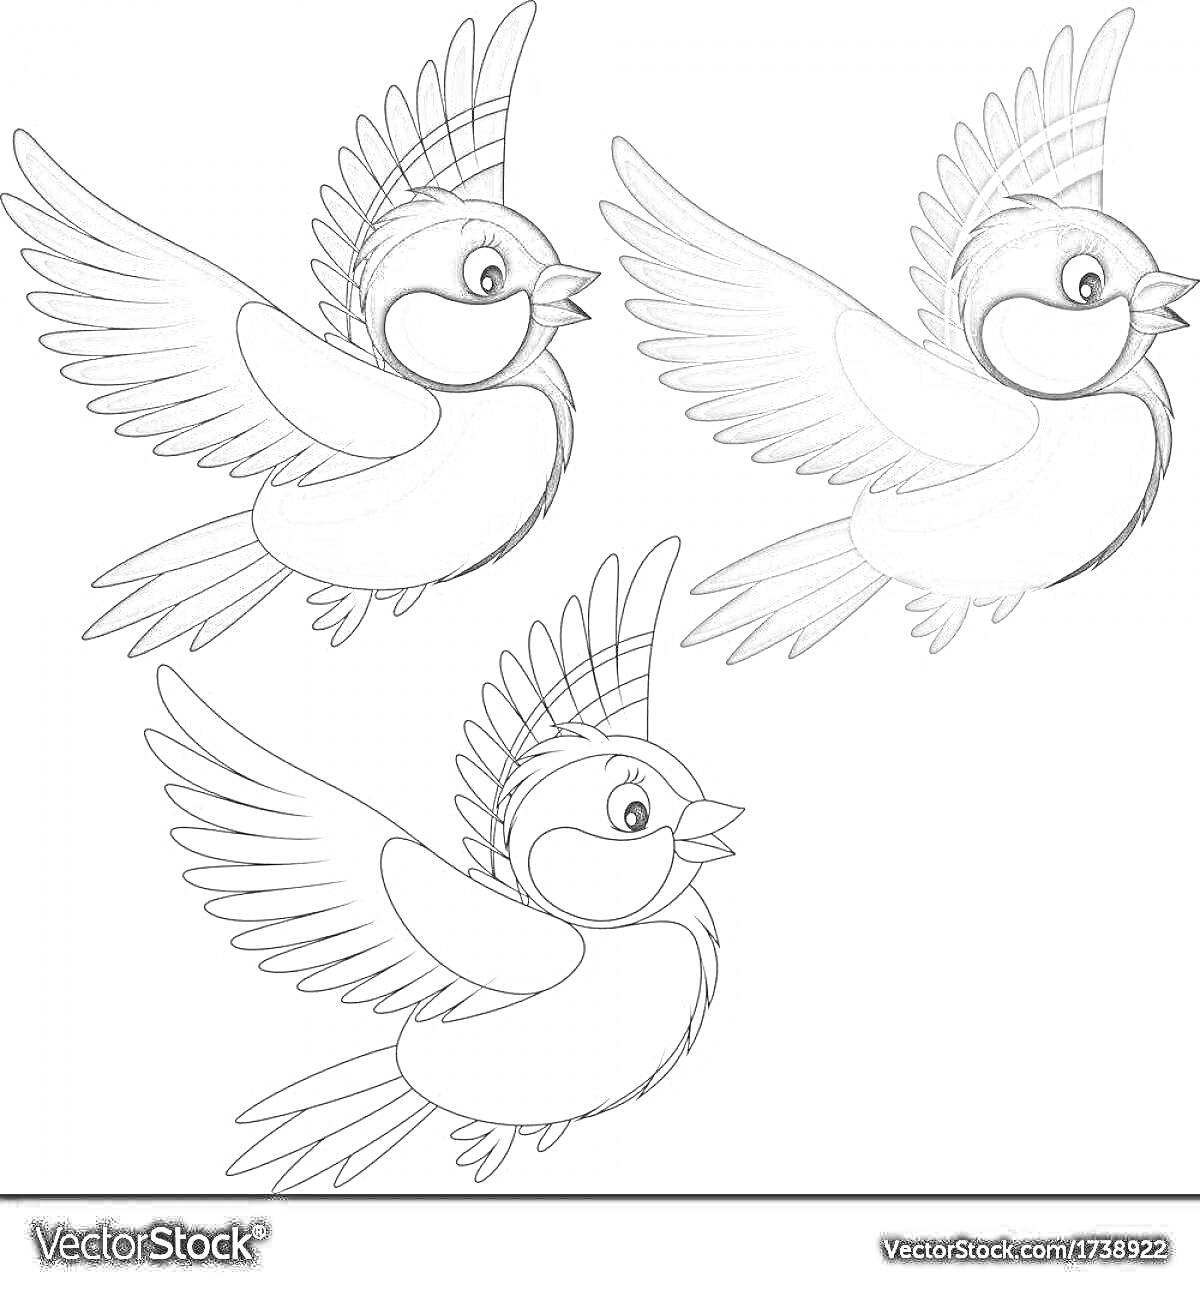 Раскраска Три летящих синицы (две раскрашенные, одна черно-белая)